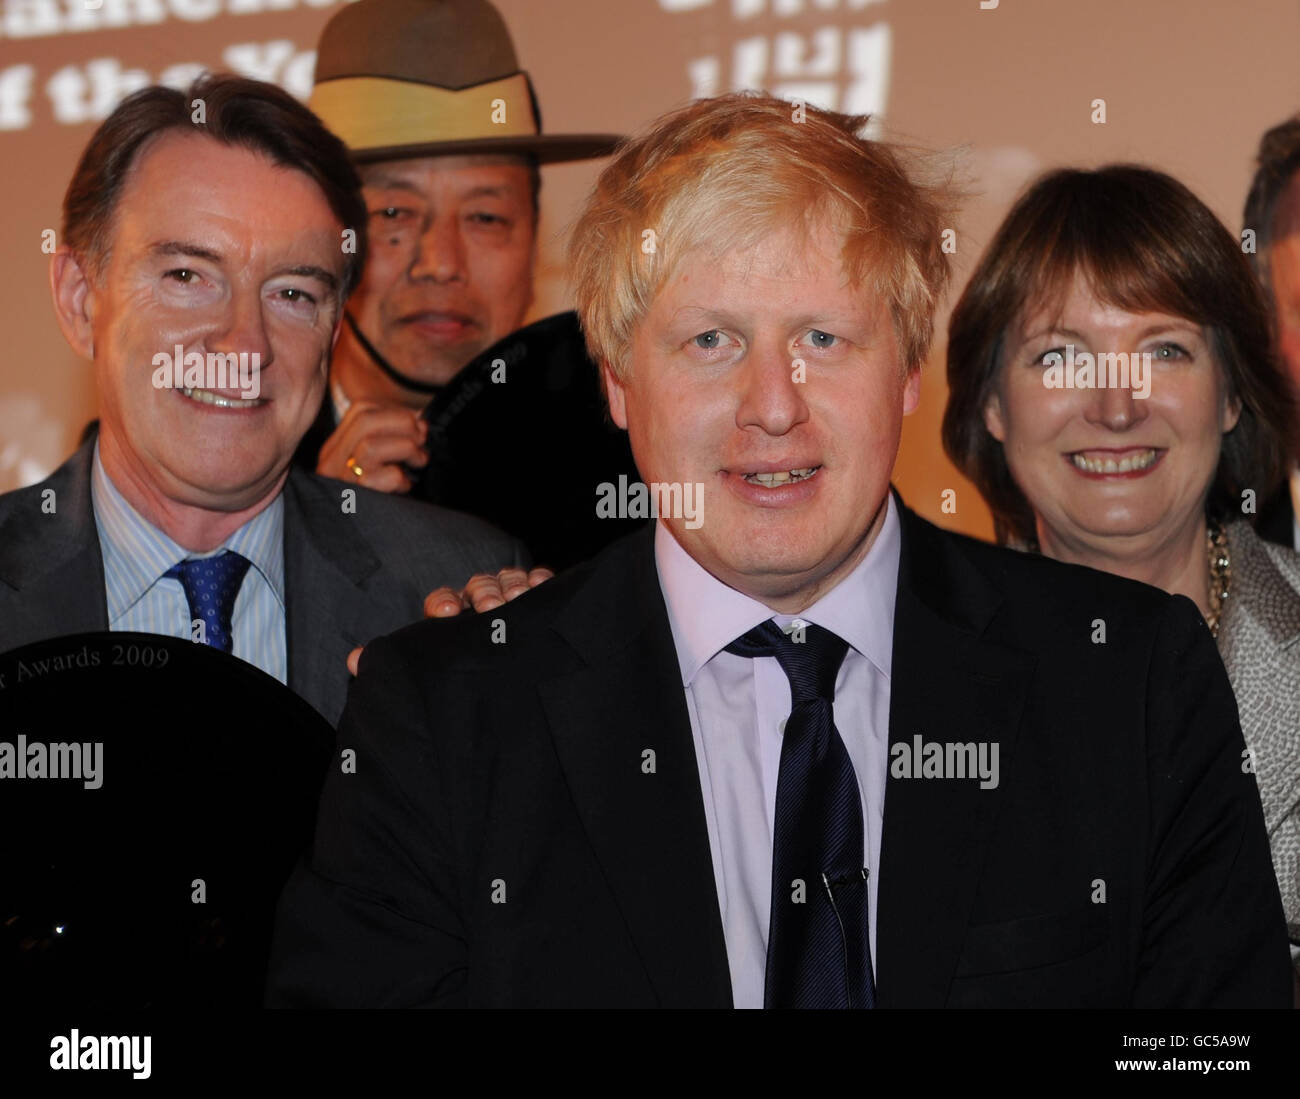 Le maire de Londres, Boris Johnson, au Spectator Parliamentarian of the Year Awards avec le politicien de l'année Peter Mandelson (à gauche) et le parlementaire de l'année Harriet Harman à l'hôtel Claridges à Londres. Banque D'Images